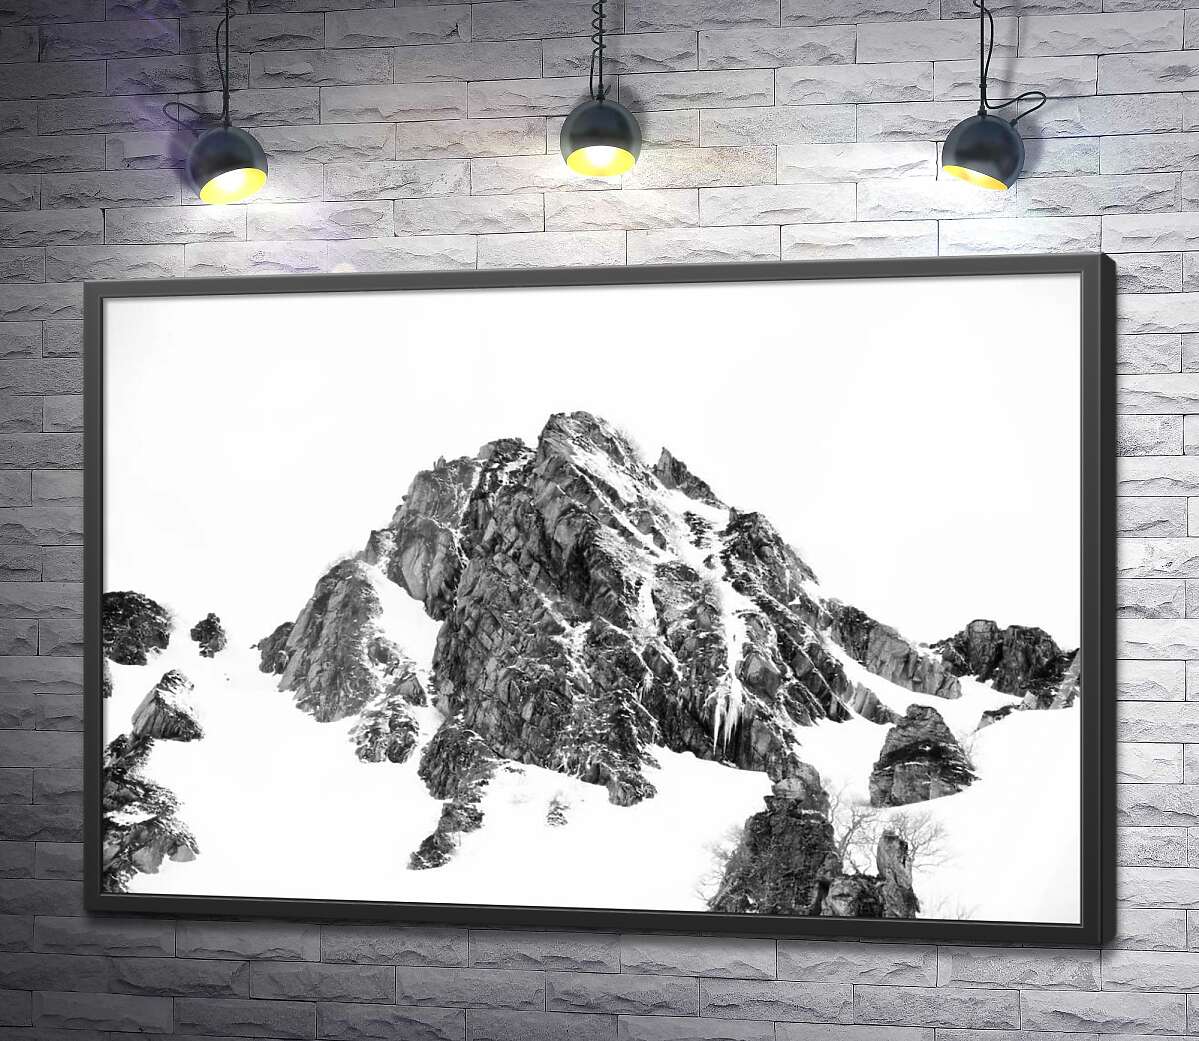 постер Заснеженые камни вершины горы Монблан (Mont Blanc)